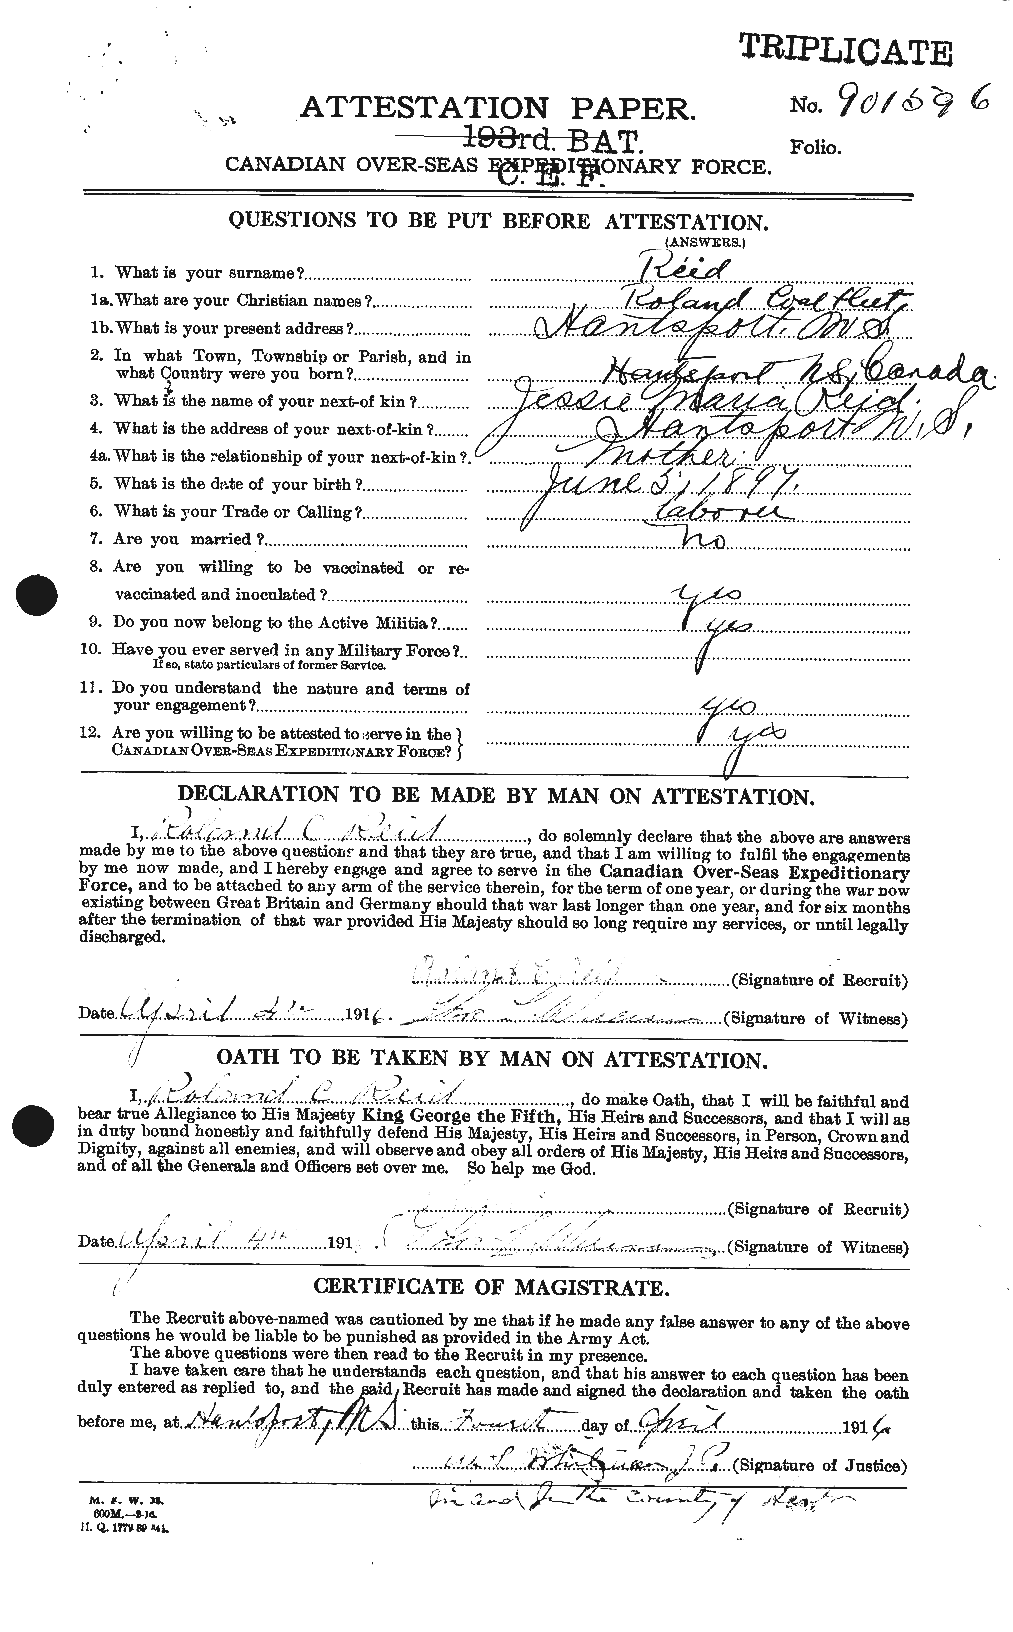 Dossiers du Personnel de la Première Guerre mondiale - CEC 601930a